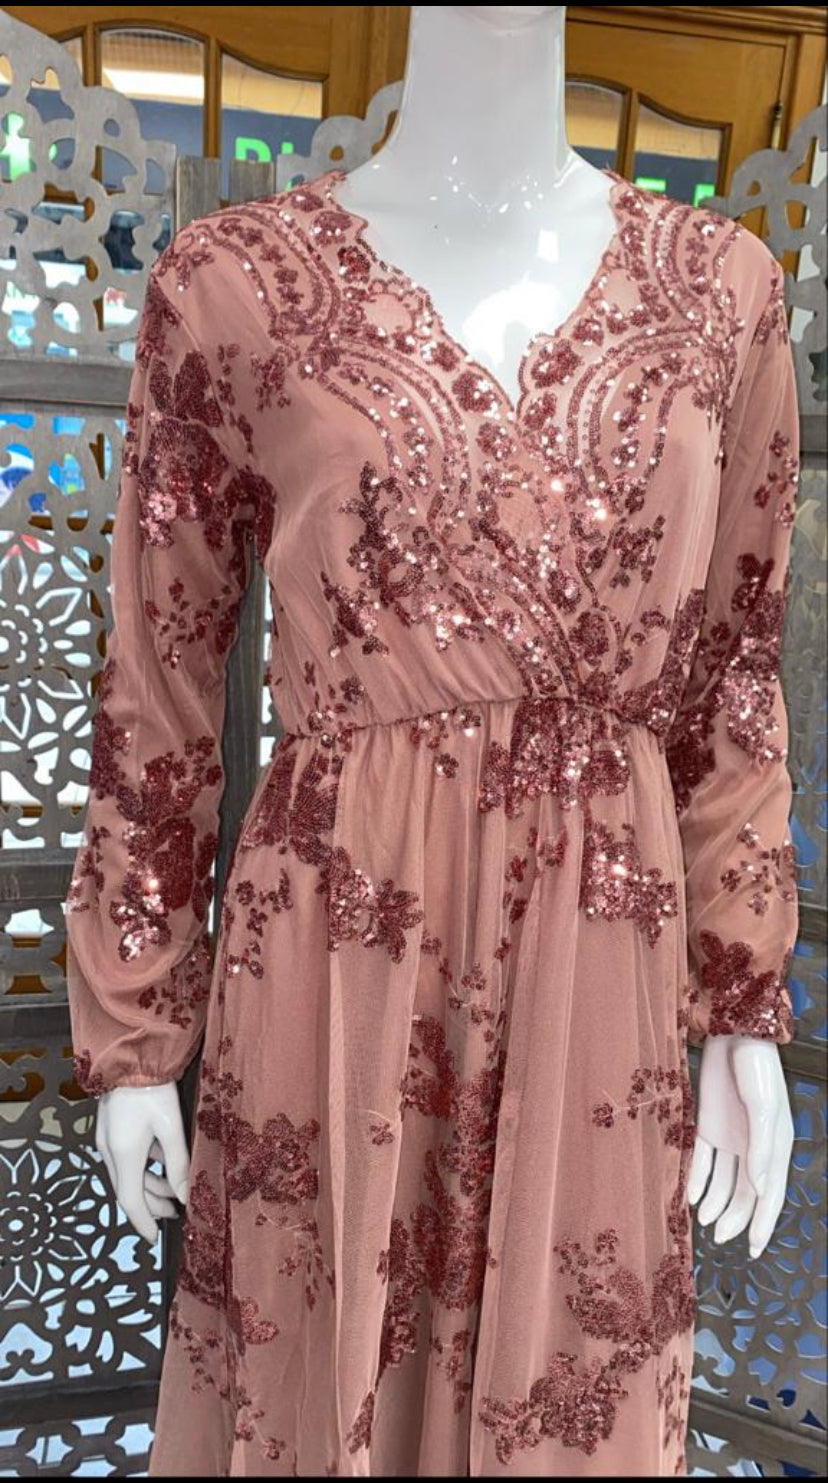 Robe du Soir NAJAH Vieux Rose - Qalam Dress – Qalam Dress